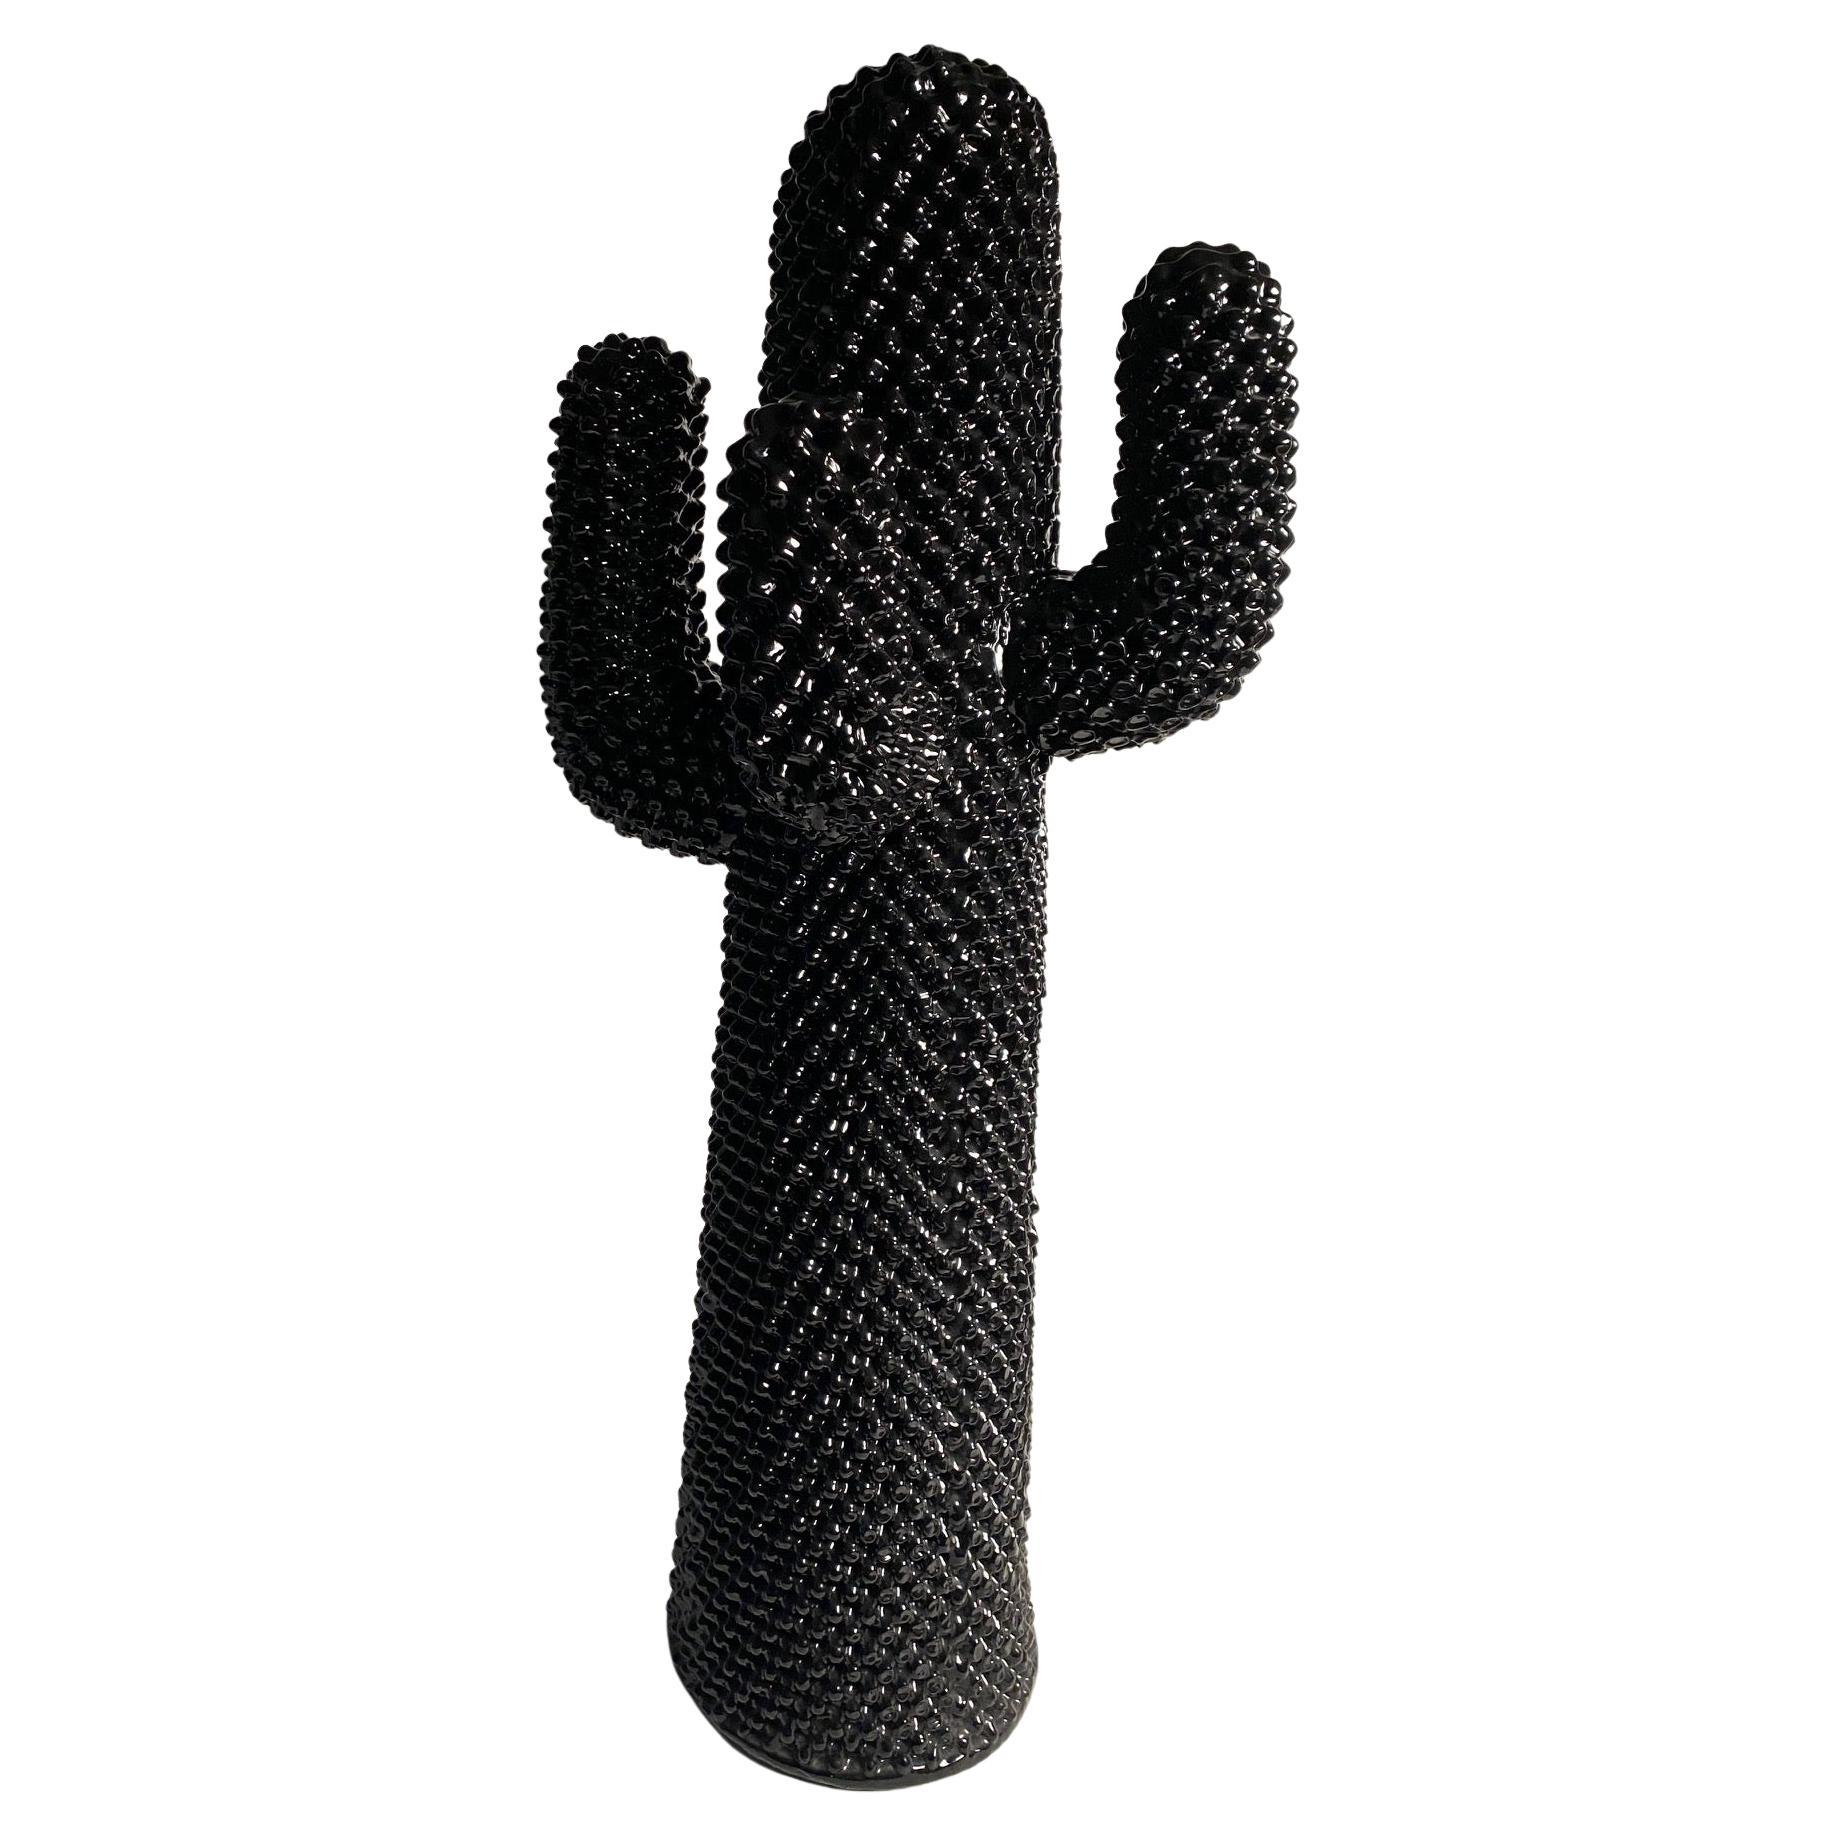 Der Cactus-Mantel ist eine Design-Ikone, die von Guido Drocco und Franco Mello für Gufram in den frühen 70er Jahren entworfen wurde. Dieses ikonische Stück wird auch heute noch produziert, in verschiedenen Farben und Stilen, je nach den aktuellen